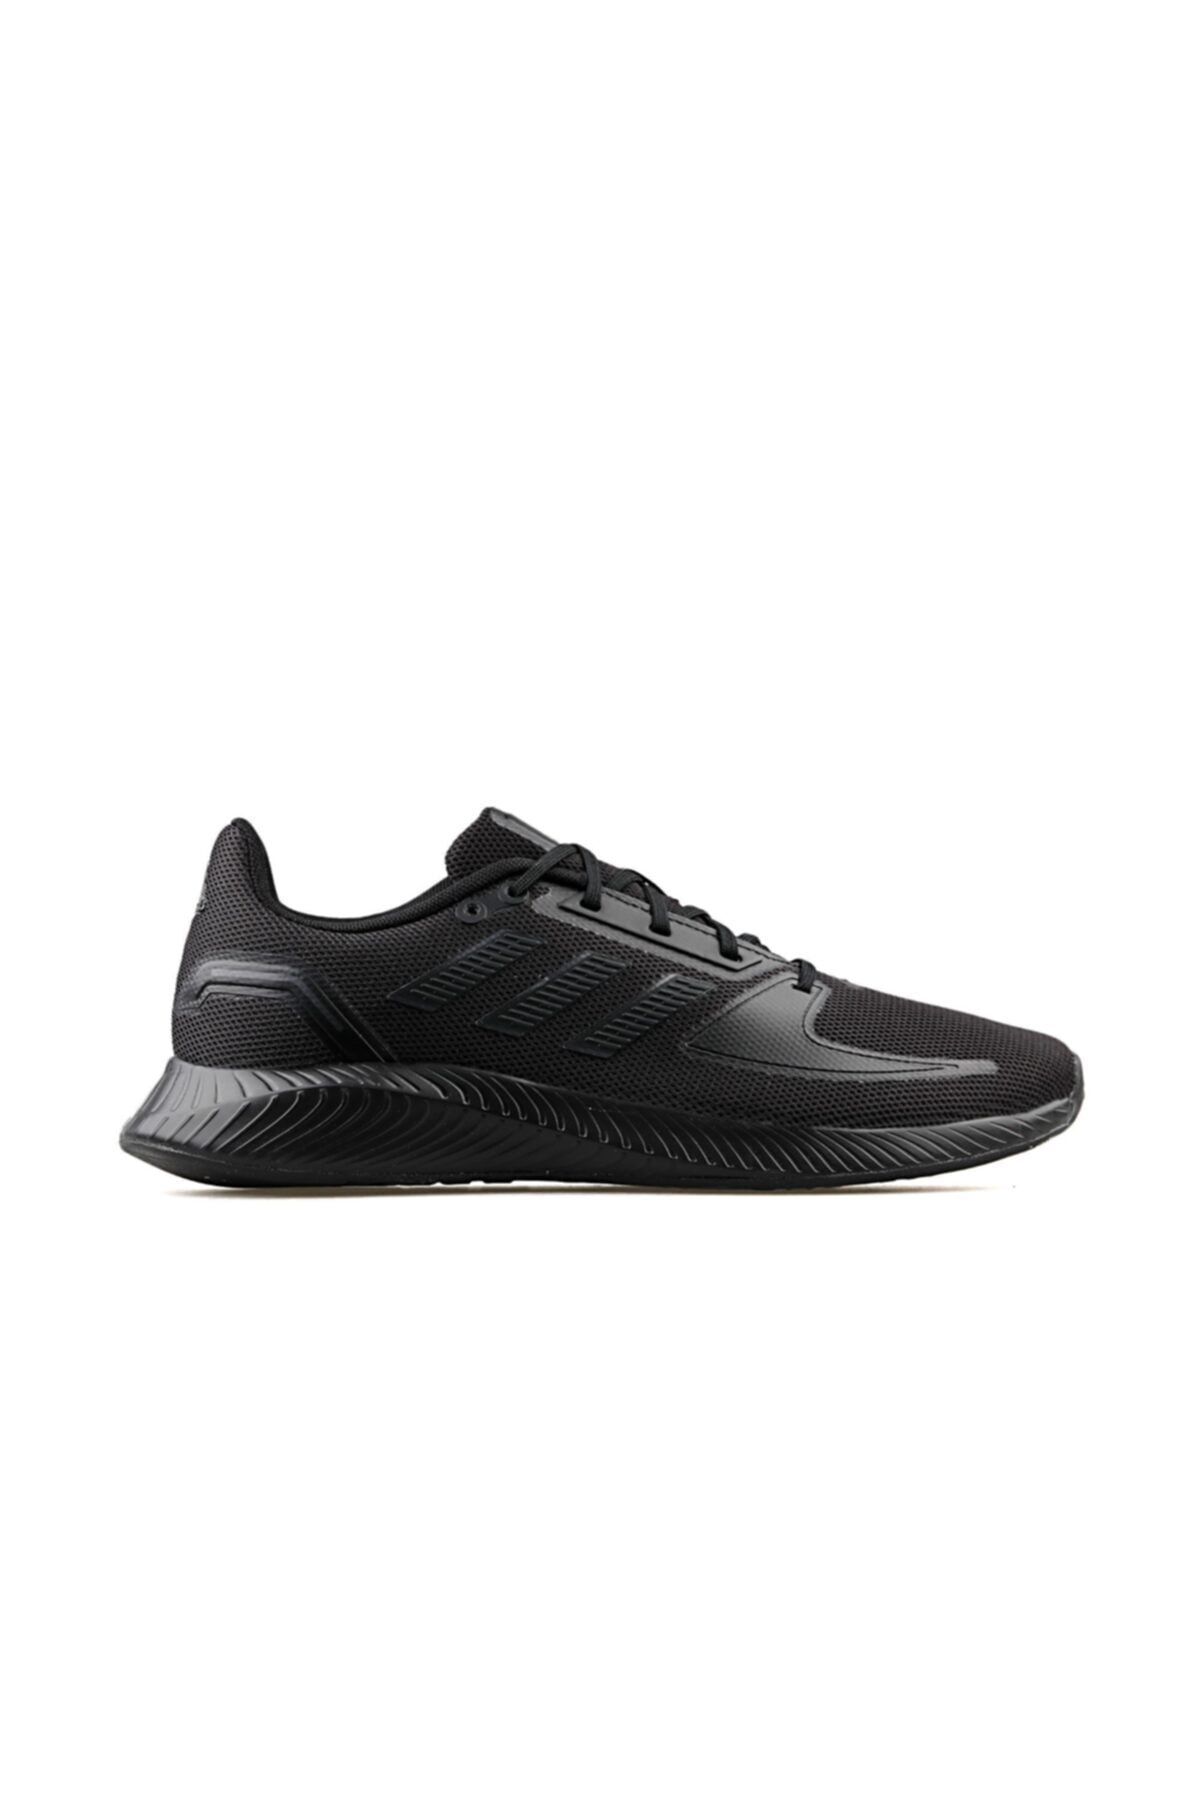 adidas Runfalcon 2.0 Erkek Günlük Ayakkabı G58096 Siyah